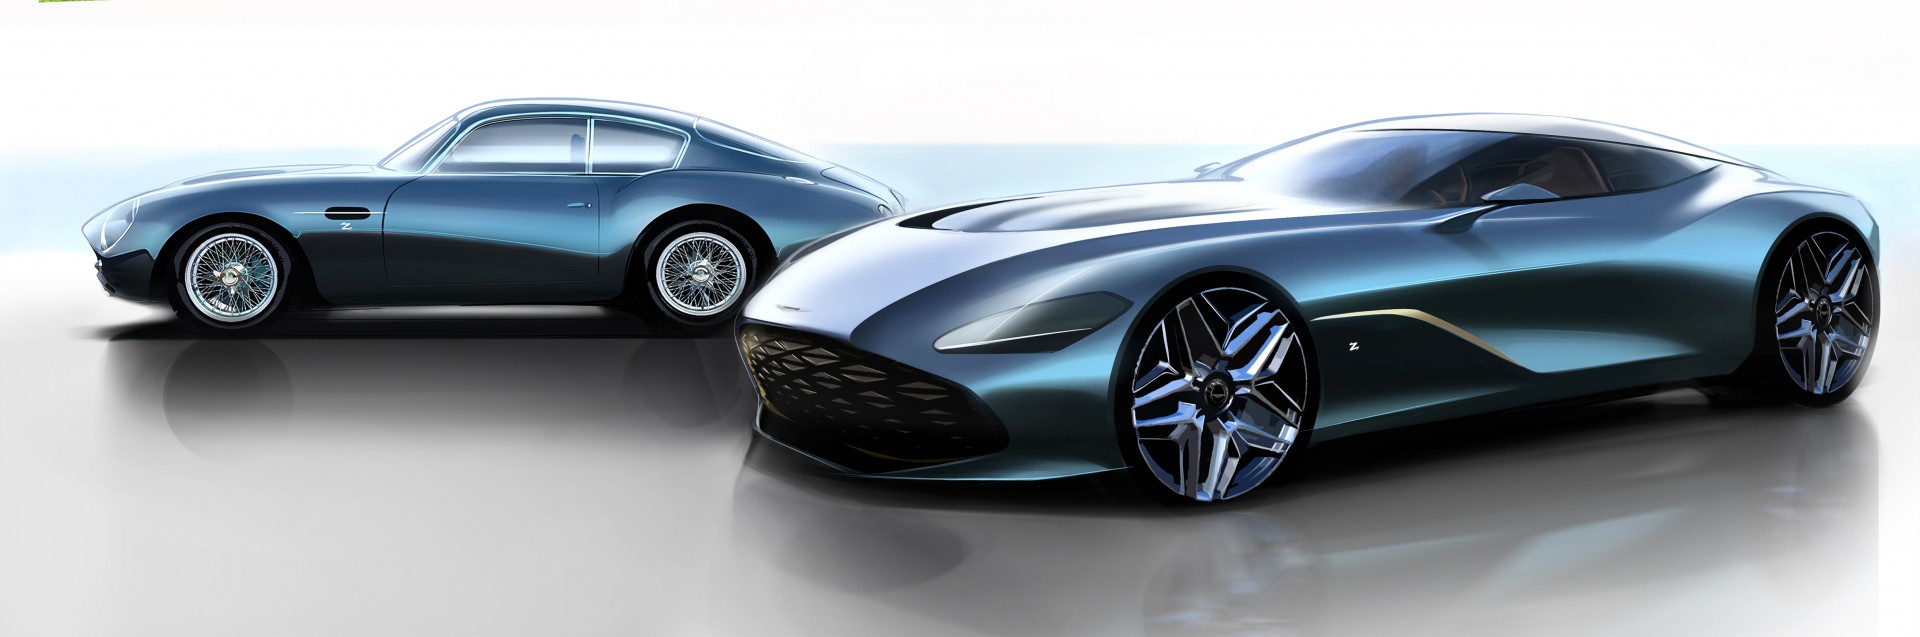 El Aston Martin DBS GT Zagato se vislumbra en los primeros bocetos